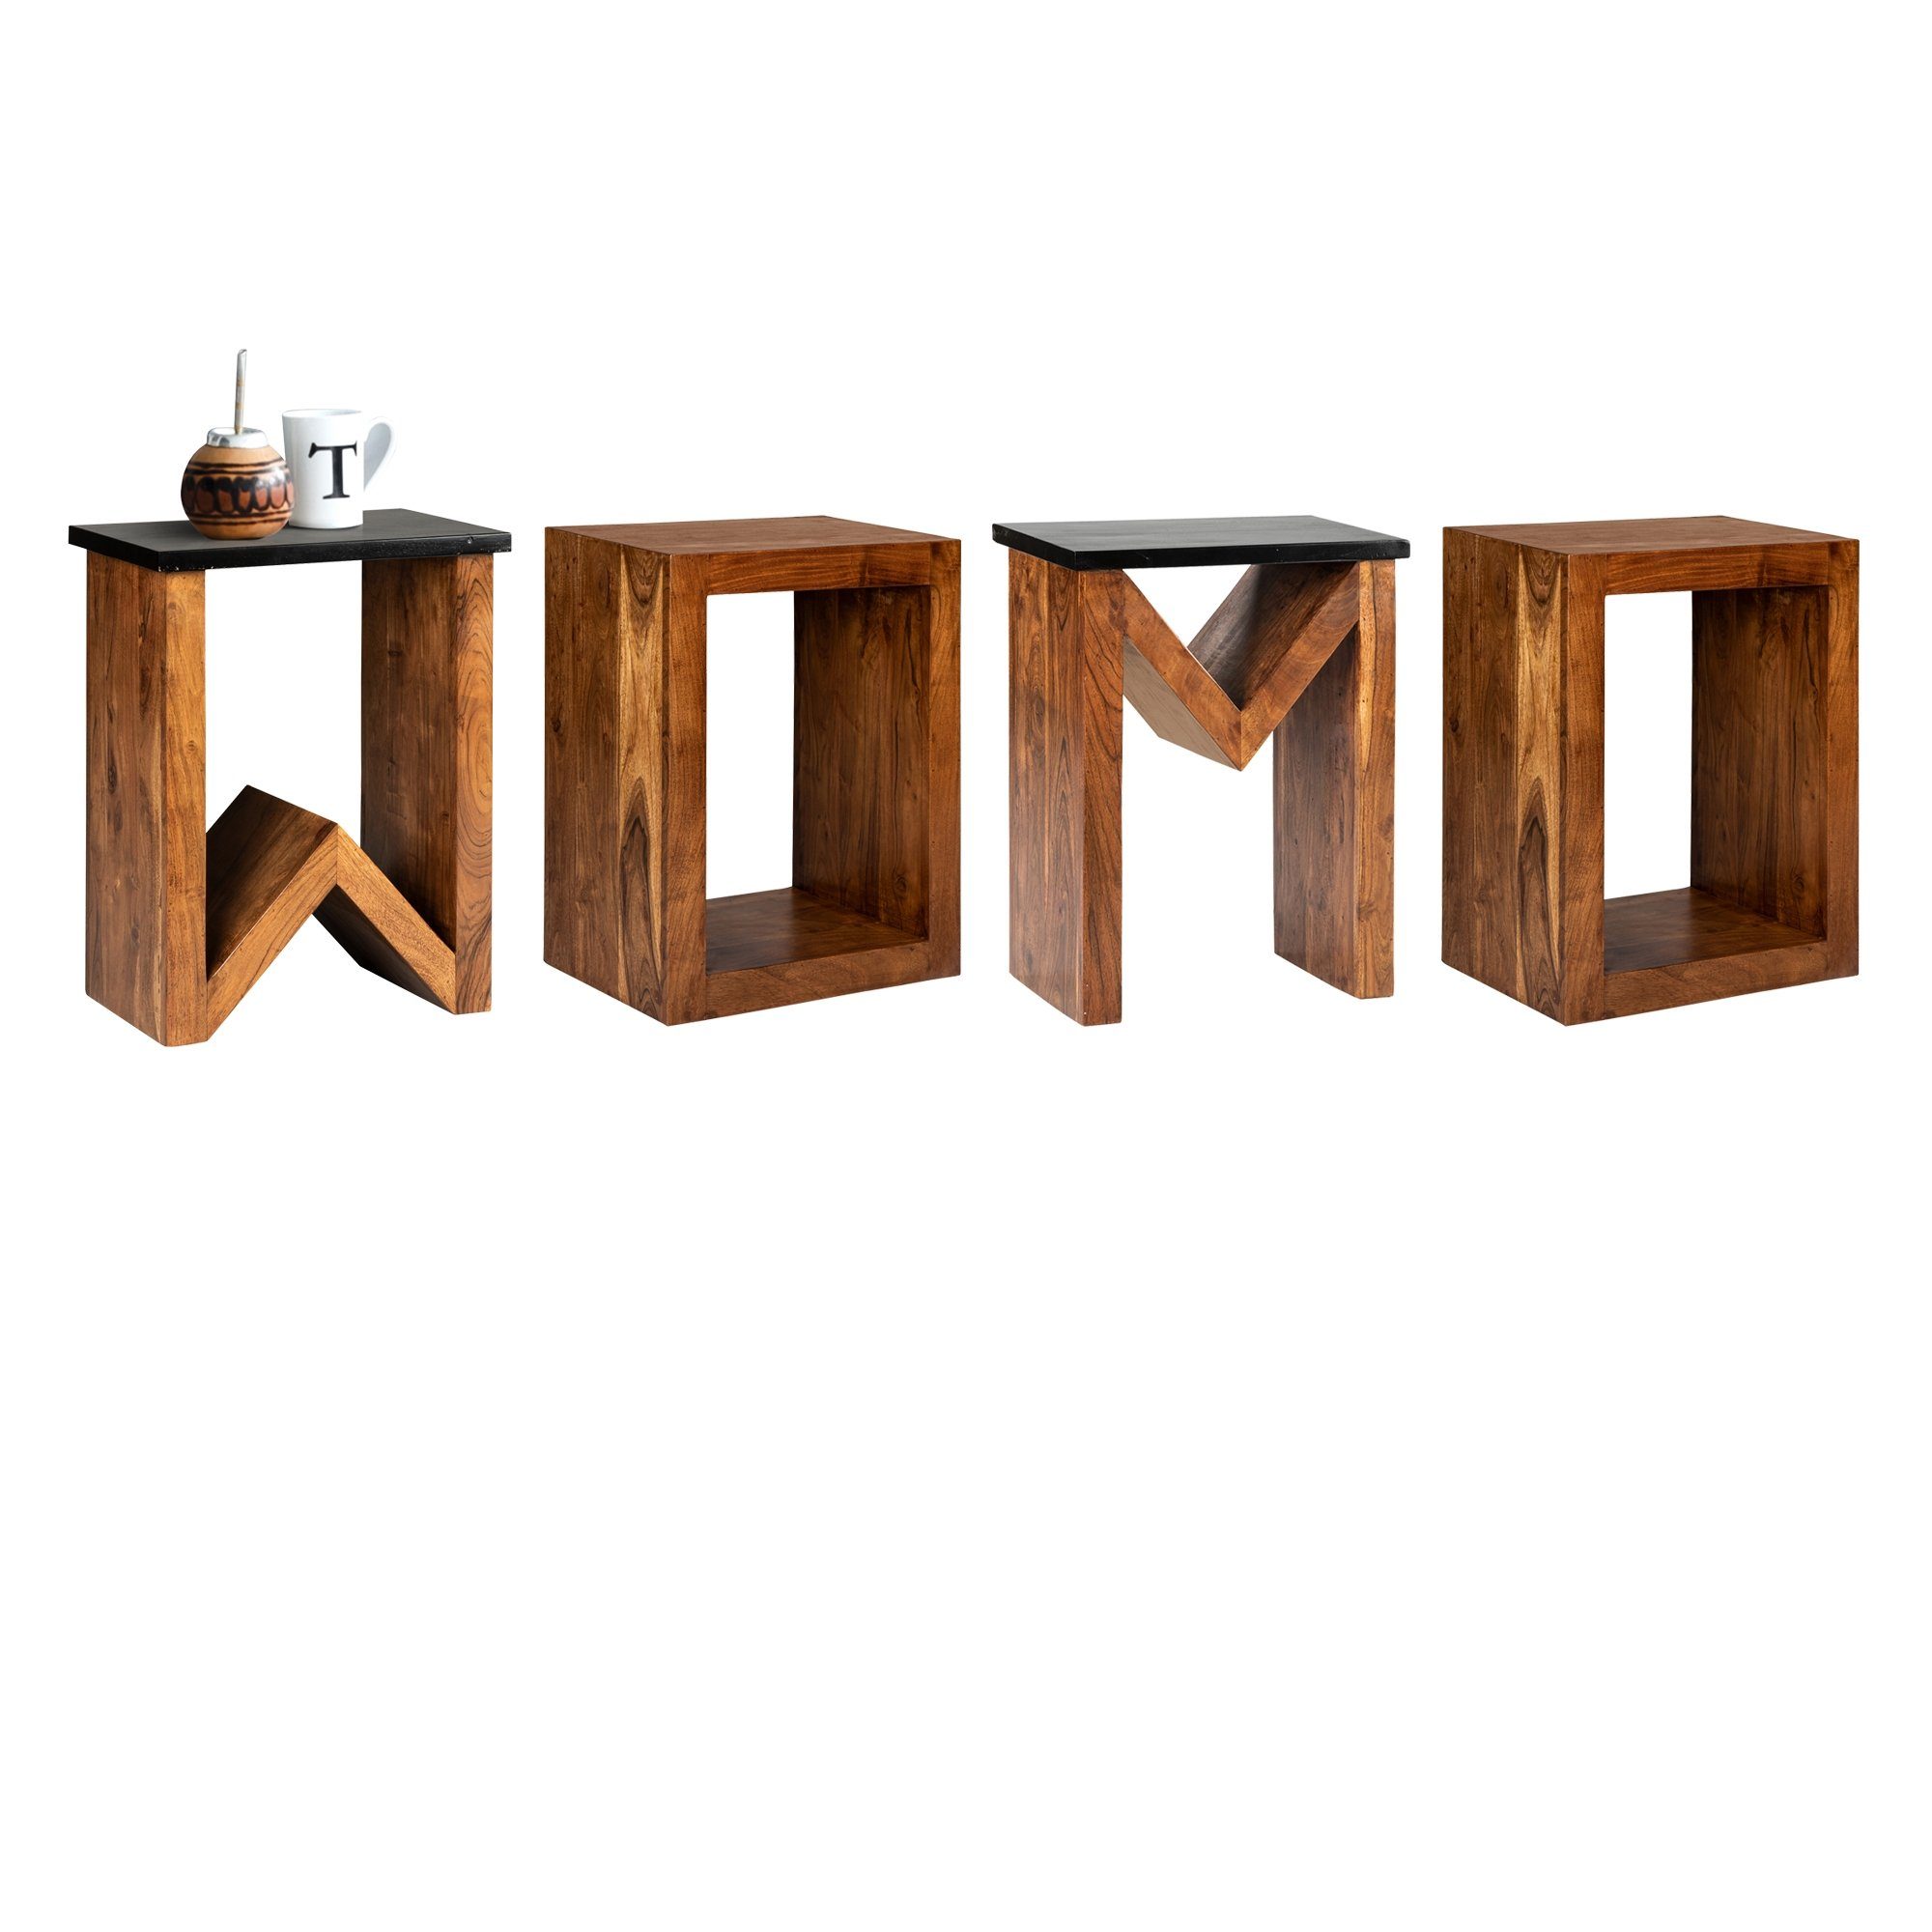 WOMO-DESIGN Beistelltisch D-Form Kaffeetisch handgefertigt Massivholz Wohnzimmertisch Sofatisch 60cm Loungetisch Unikat Braun Holztisch, Akazienholz